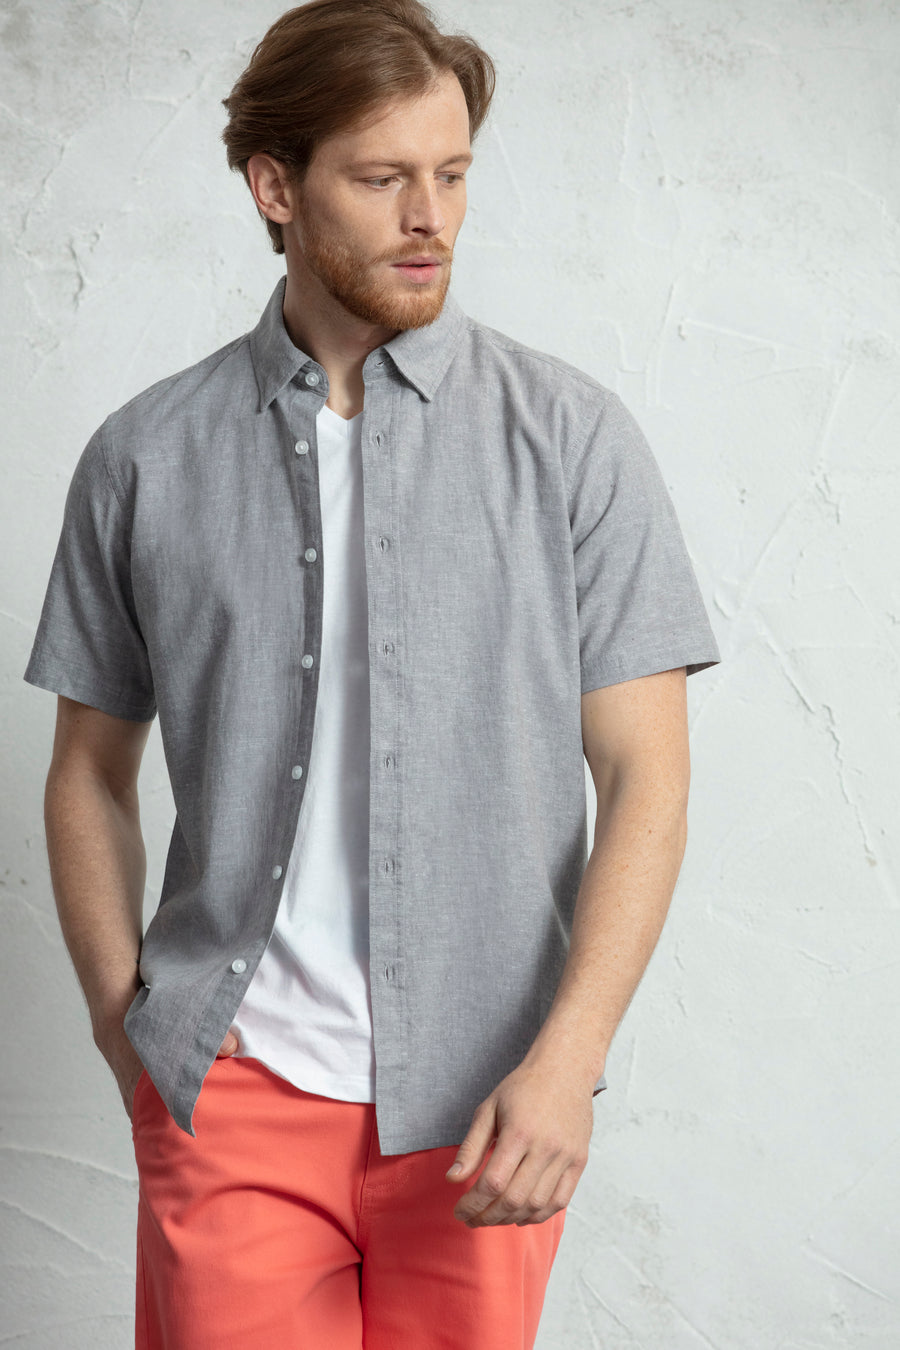 Camisa básica de manga curta com tecido de mistura de algodão e linho.